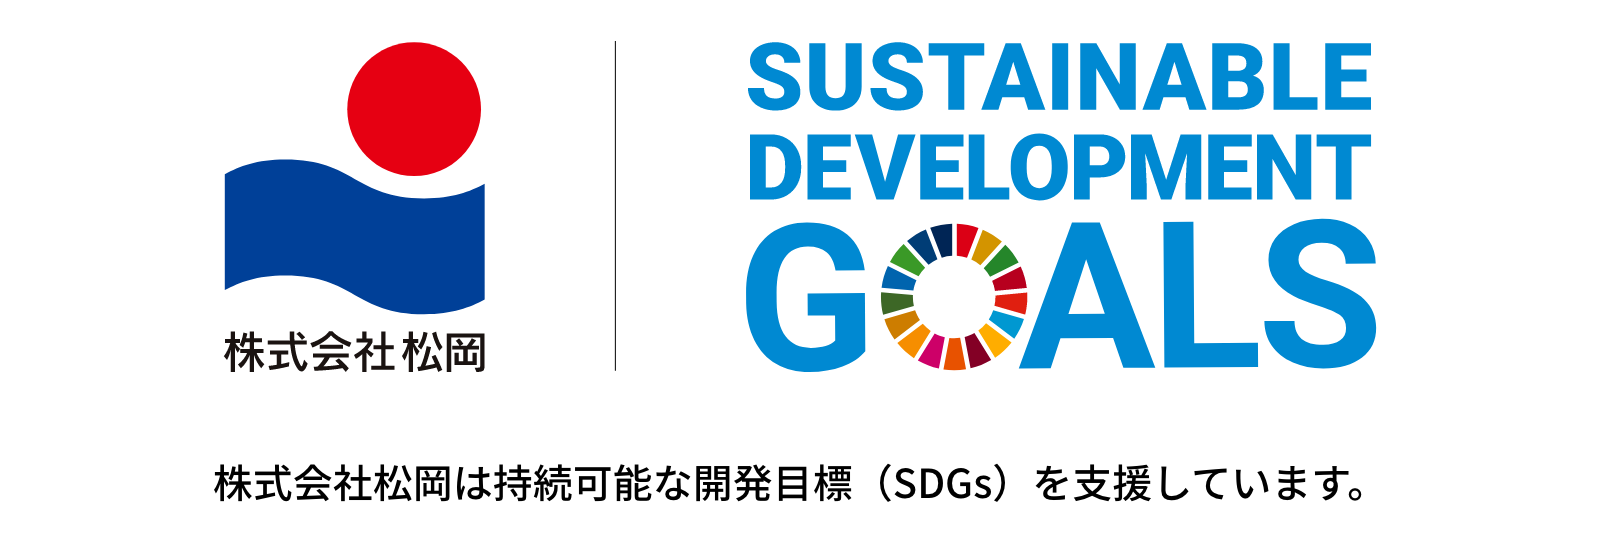 株式会社松岡 Sustainable Development Goals 株式会社松岡は持続可能な開発目標(SDGs)を支援しています。